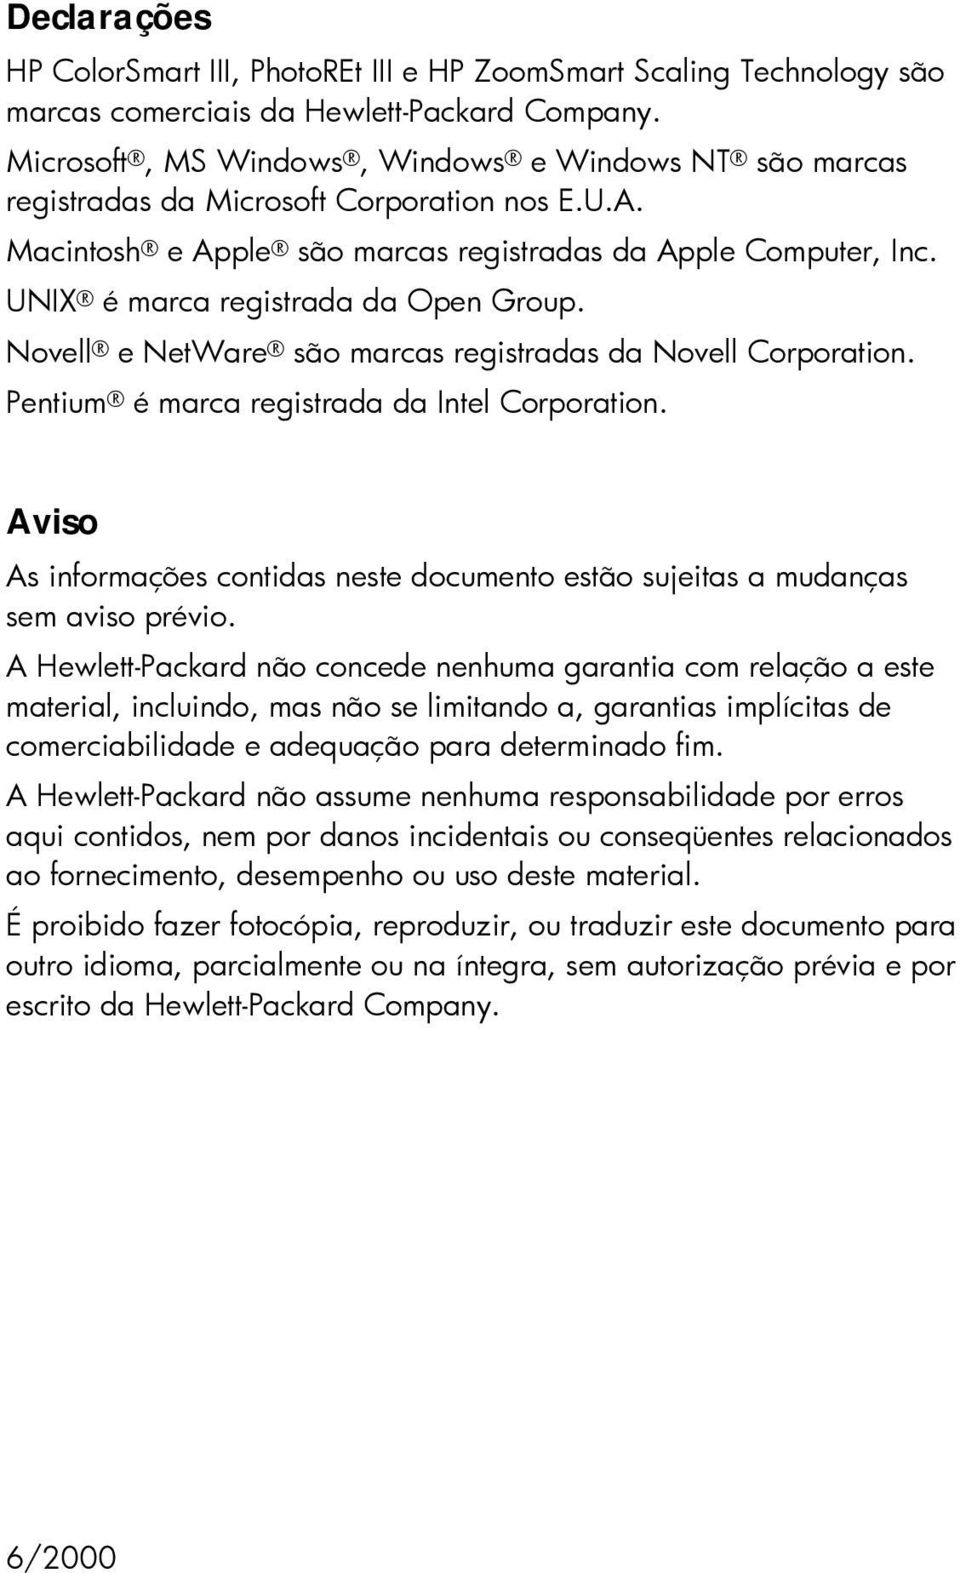 UNIX é marca registrada da Open Group. Novell e NetWare são marcas registradas da Novell Corporation. Pentium é marca registrada da Intel Corporation.